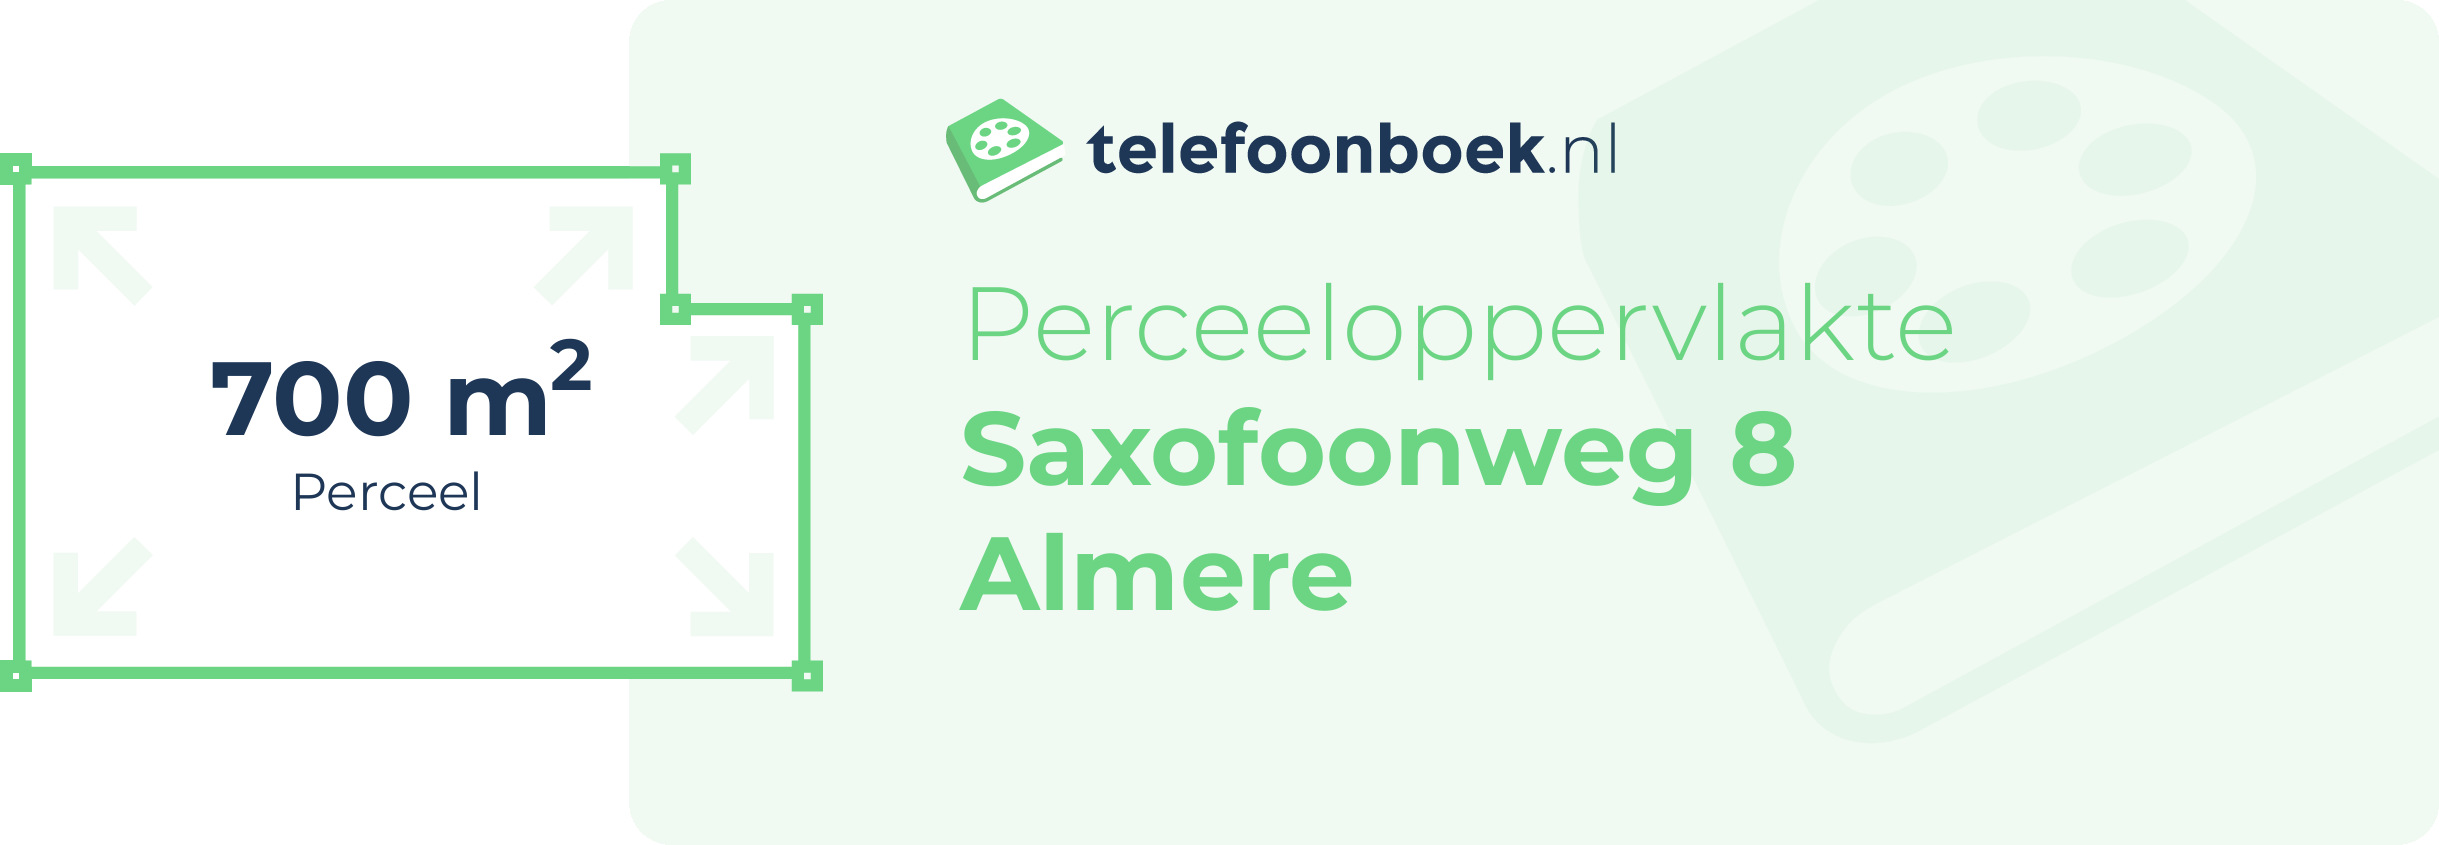 Perceeloppervlakte Saxofoonweg 8 Almere